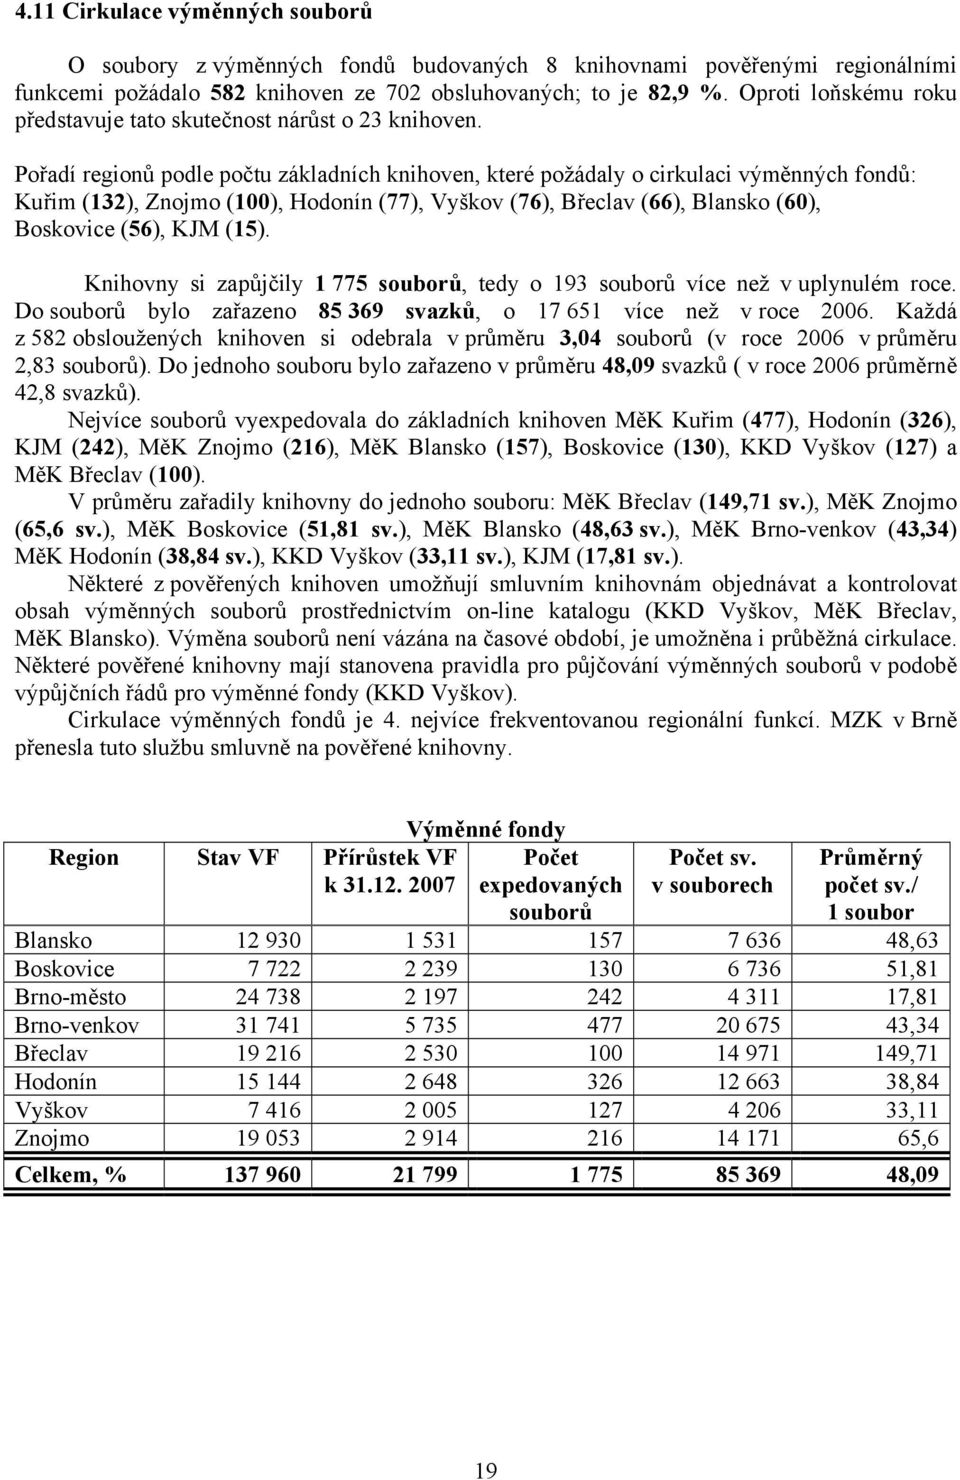 Pořadí regionů podle počtu základních, které požádaly o cirkulaci výměnných fondů: Kuřim (132), Znojmo (100), Hodonín (77), Vyškov (76), Břeclav (66), Blansko (60), Boskovice (56), KJM (15).